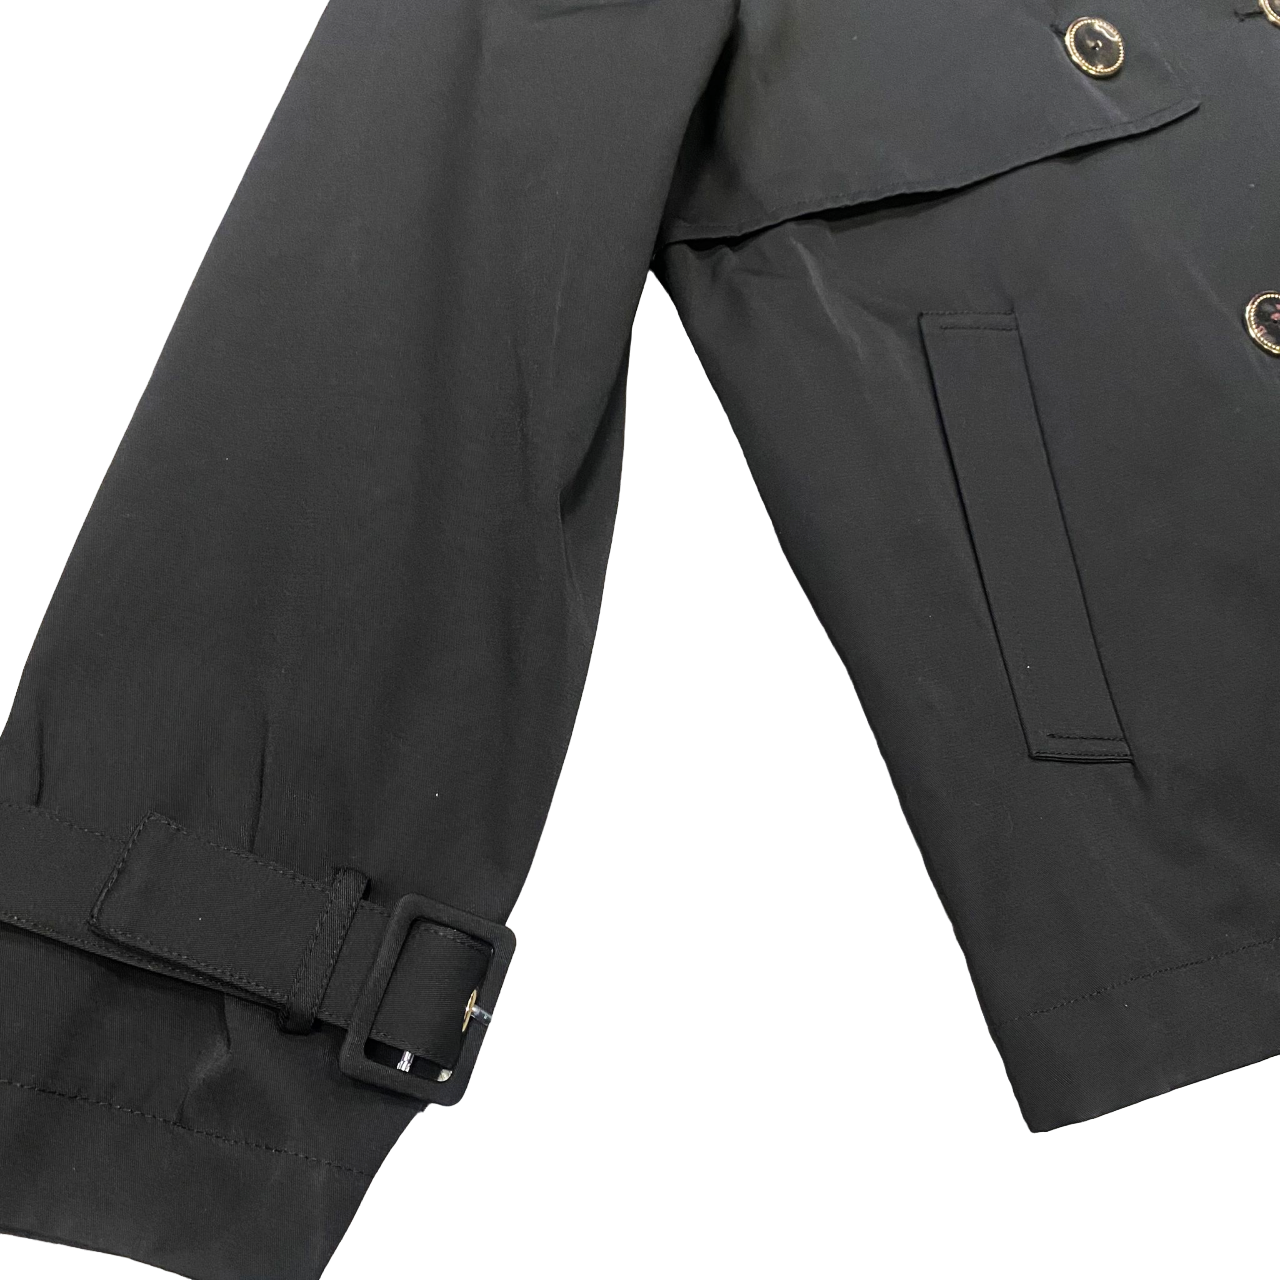 Censured giacca a doppiopetto da donna GWC174TCPY4 90 nero